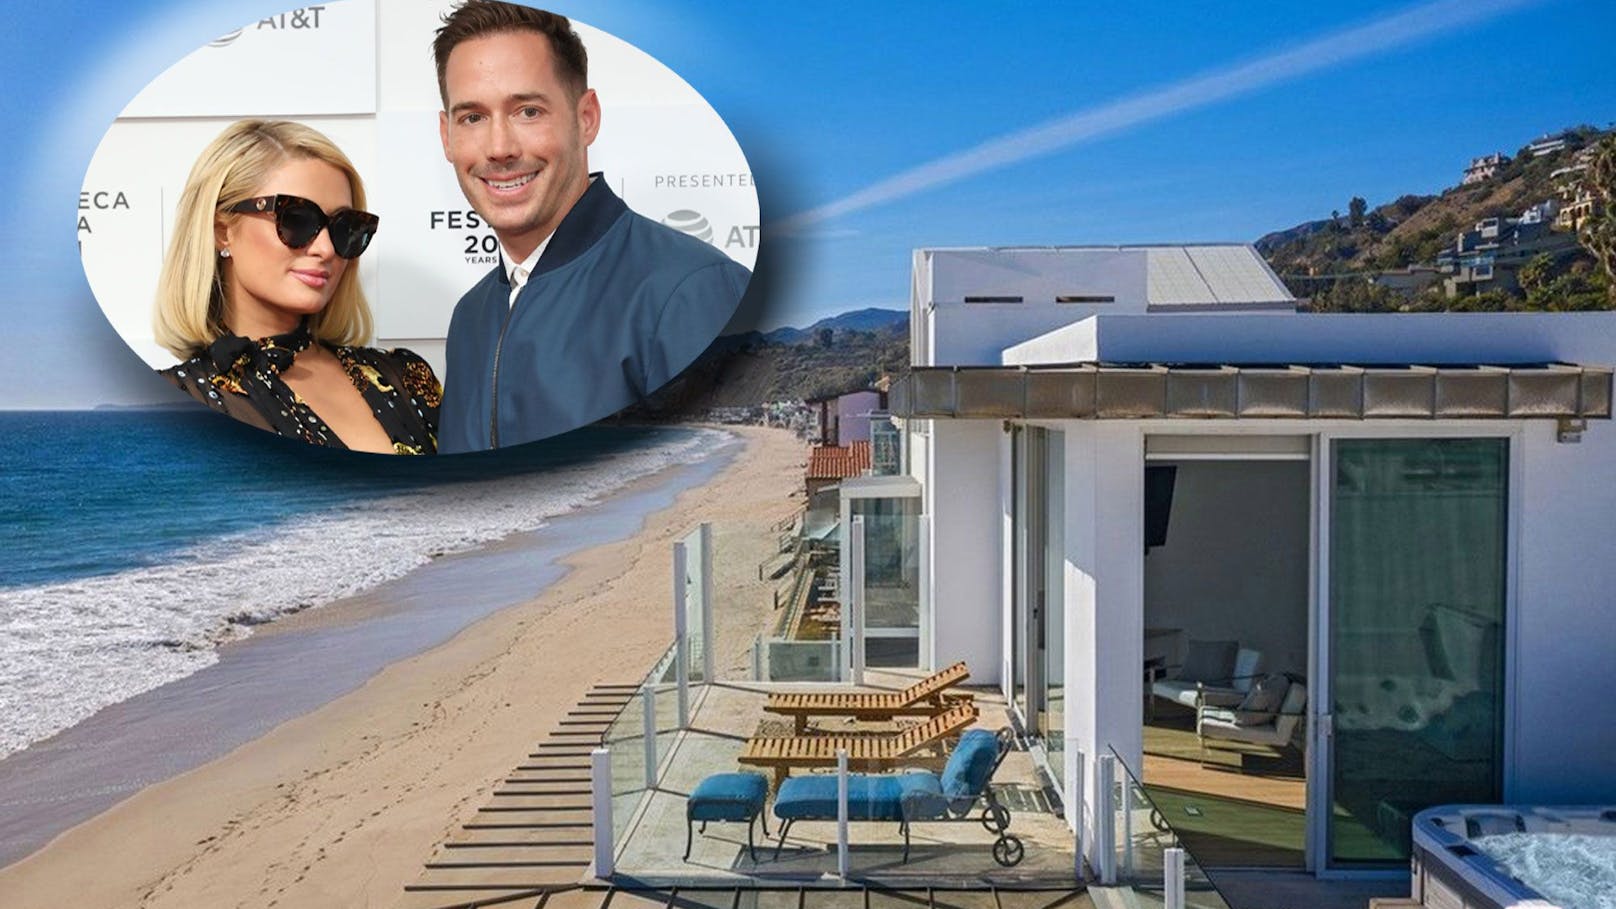 Paris Hilton und Carter Reum sind seit zwei Jahren offiziell ein Paar. Jetzt haben sich die Hotel-Erbin und der Unternehmer ein kleines Strand-Paradies geleistet.